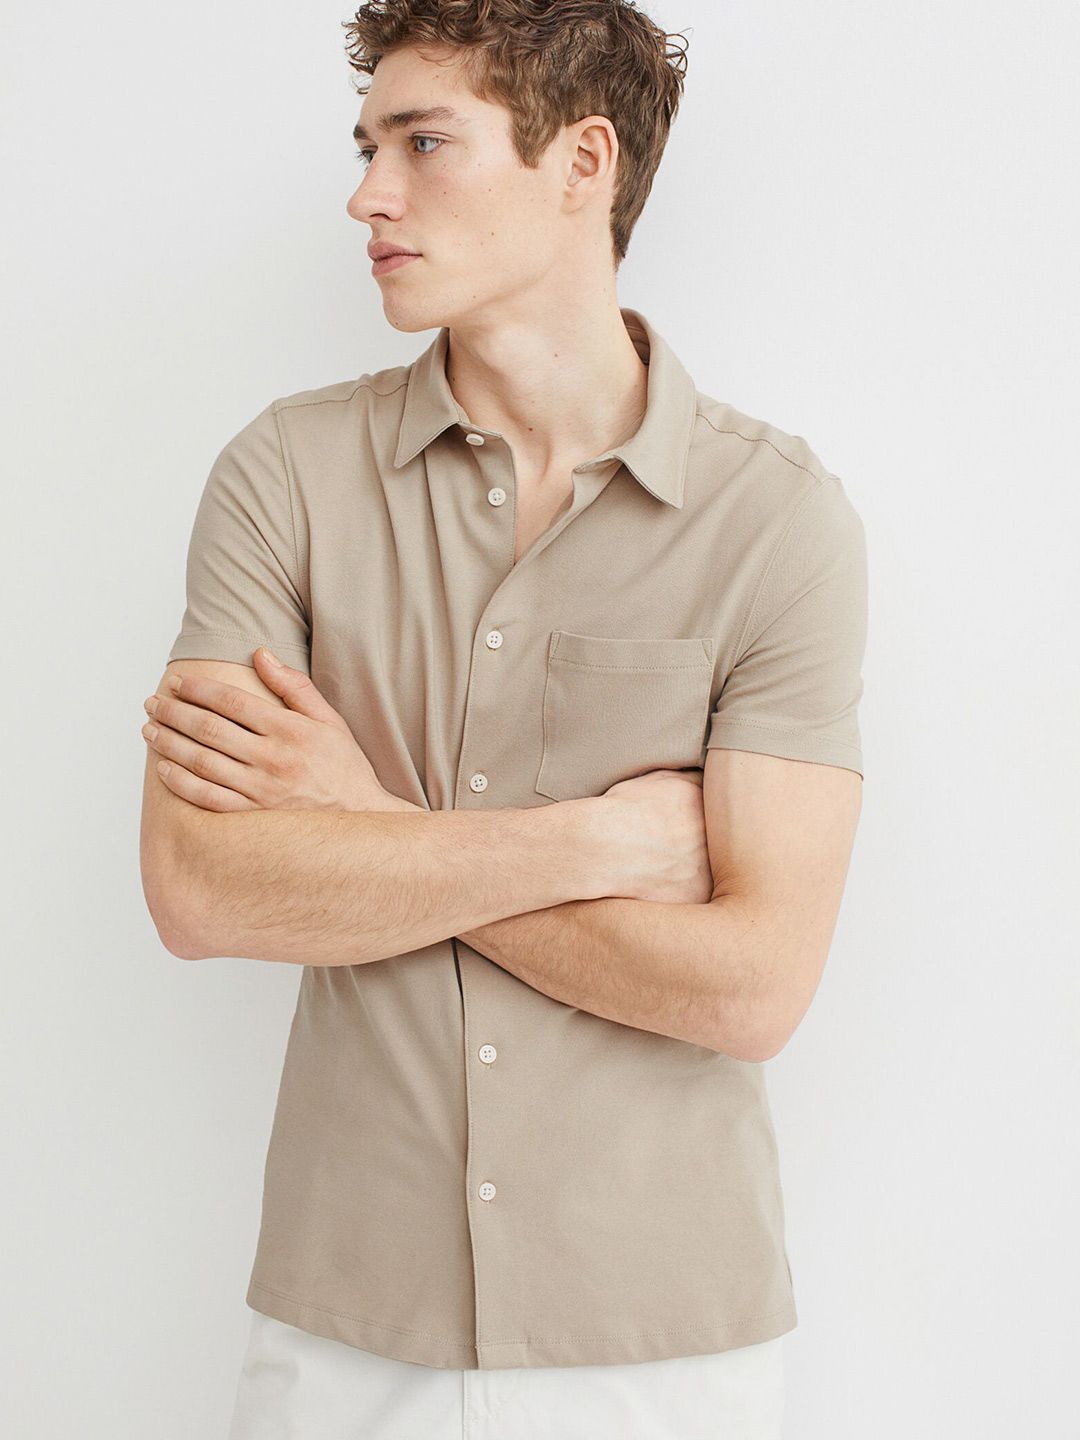 H&M Men's Muscle Fit Cotton Shirt